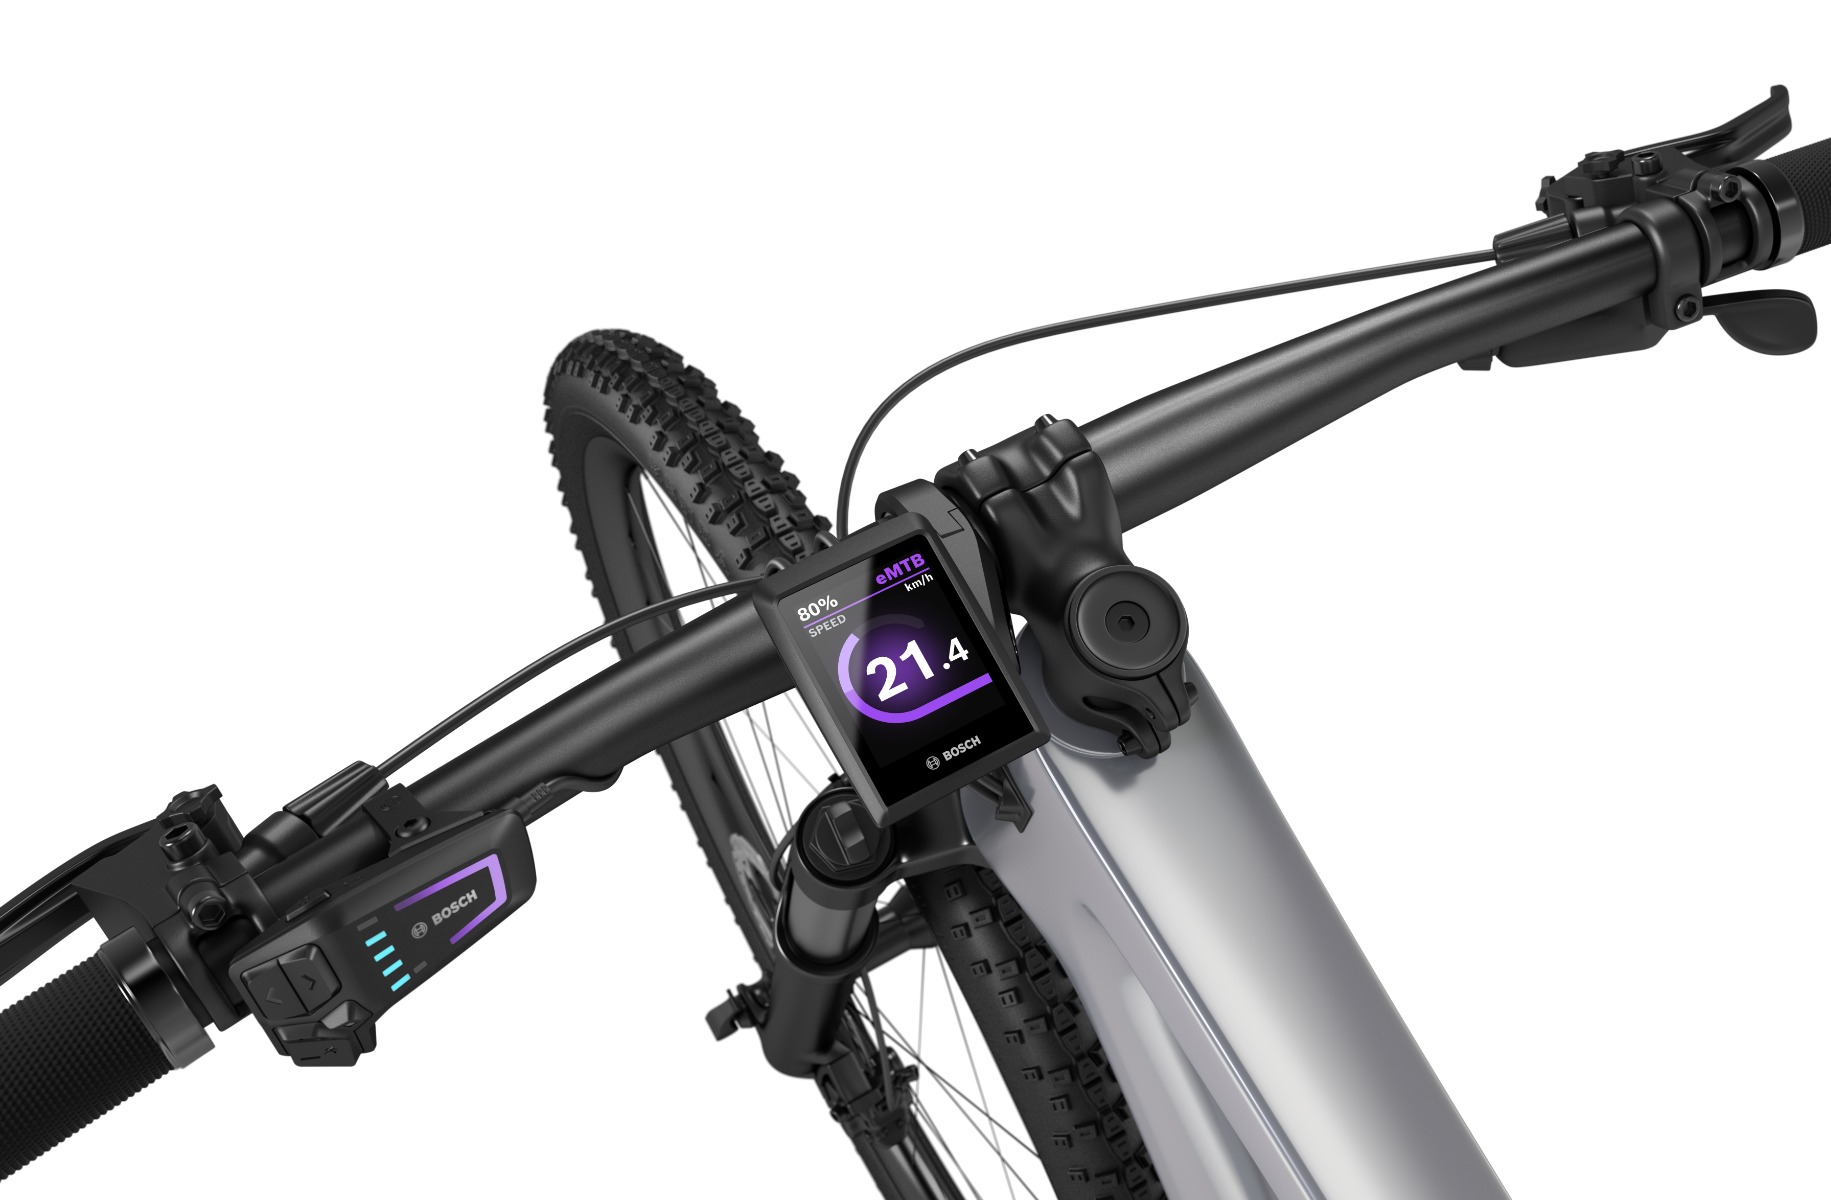 Bosch kiox 300 sur un vélo électrique montrant la fonction de navigation